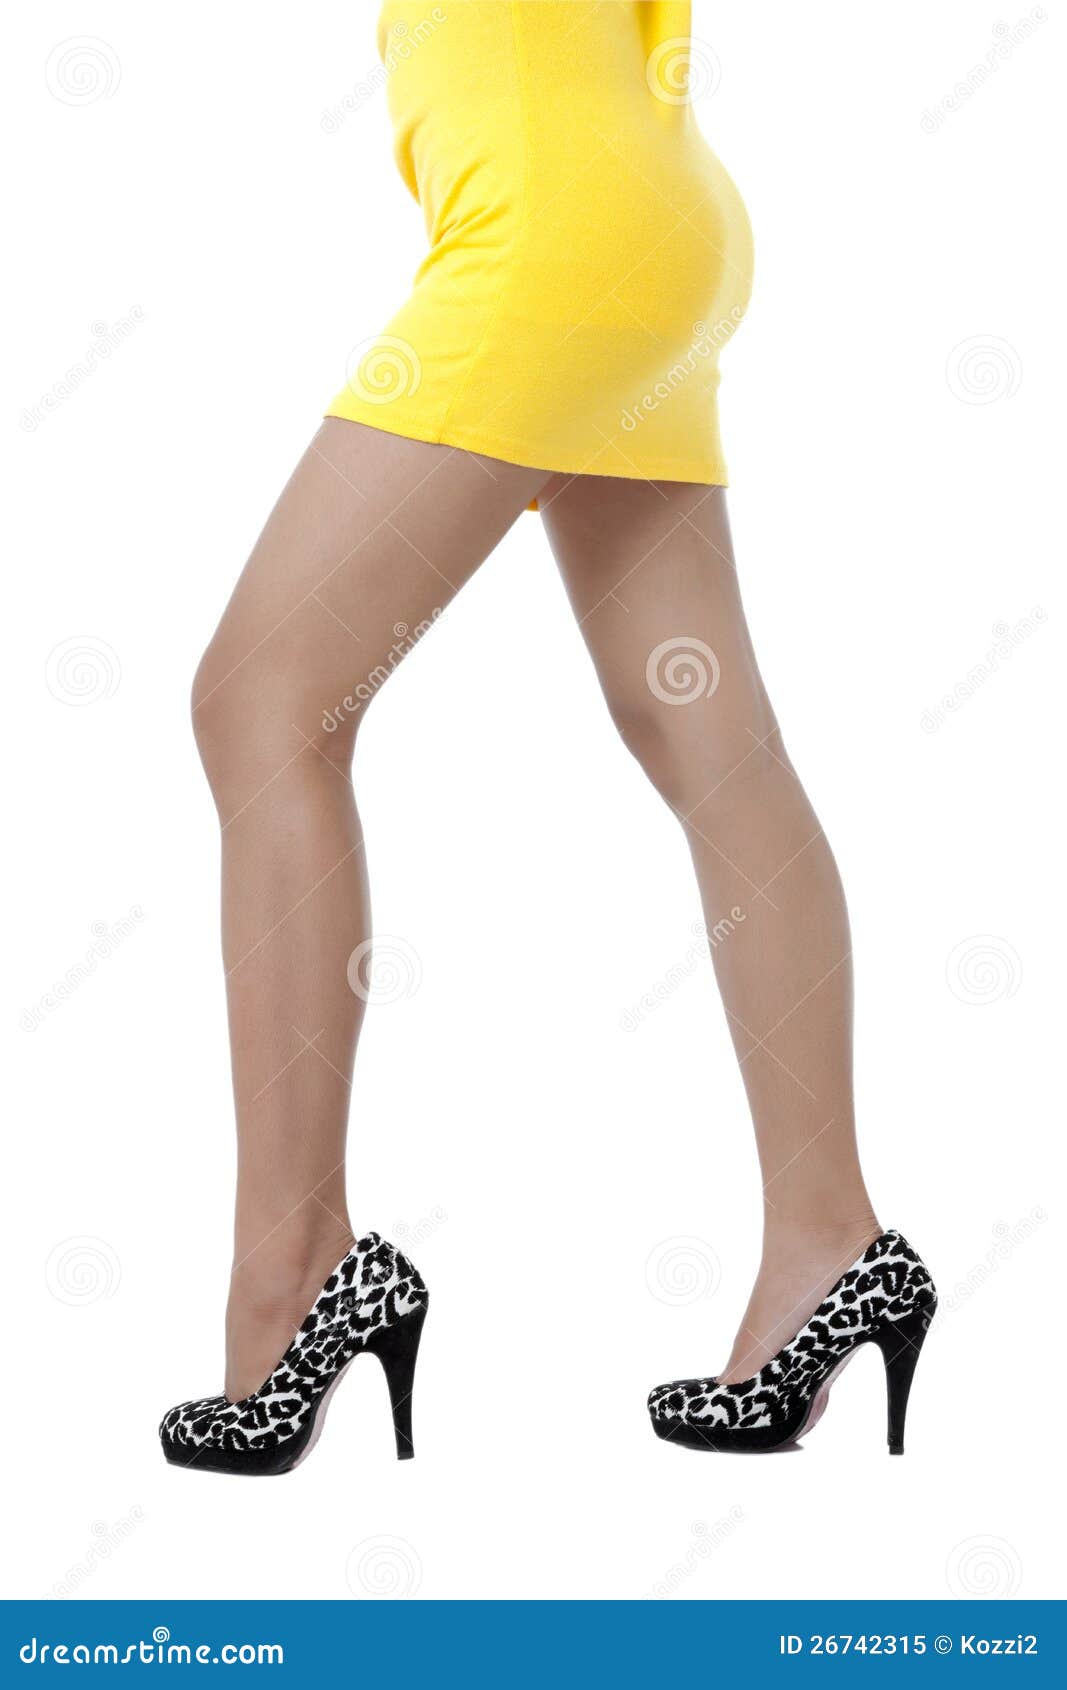 Ladys legs close up stock image. Image of full, heeled - 26742315